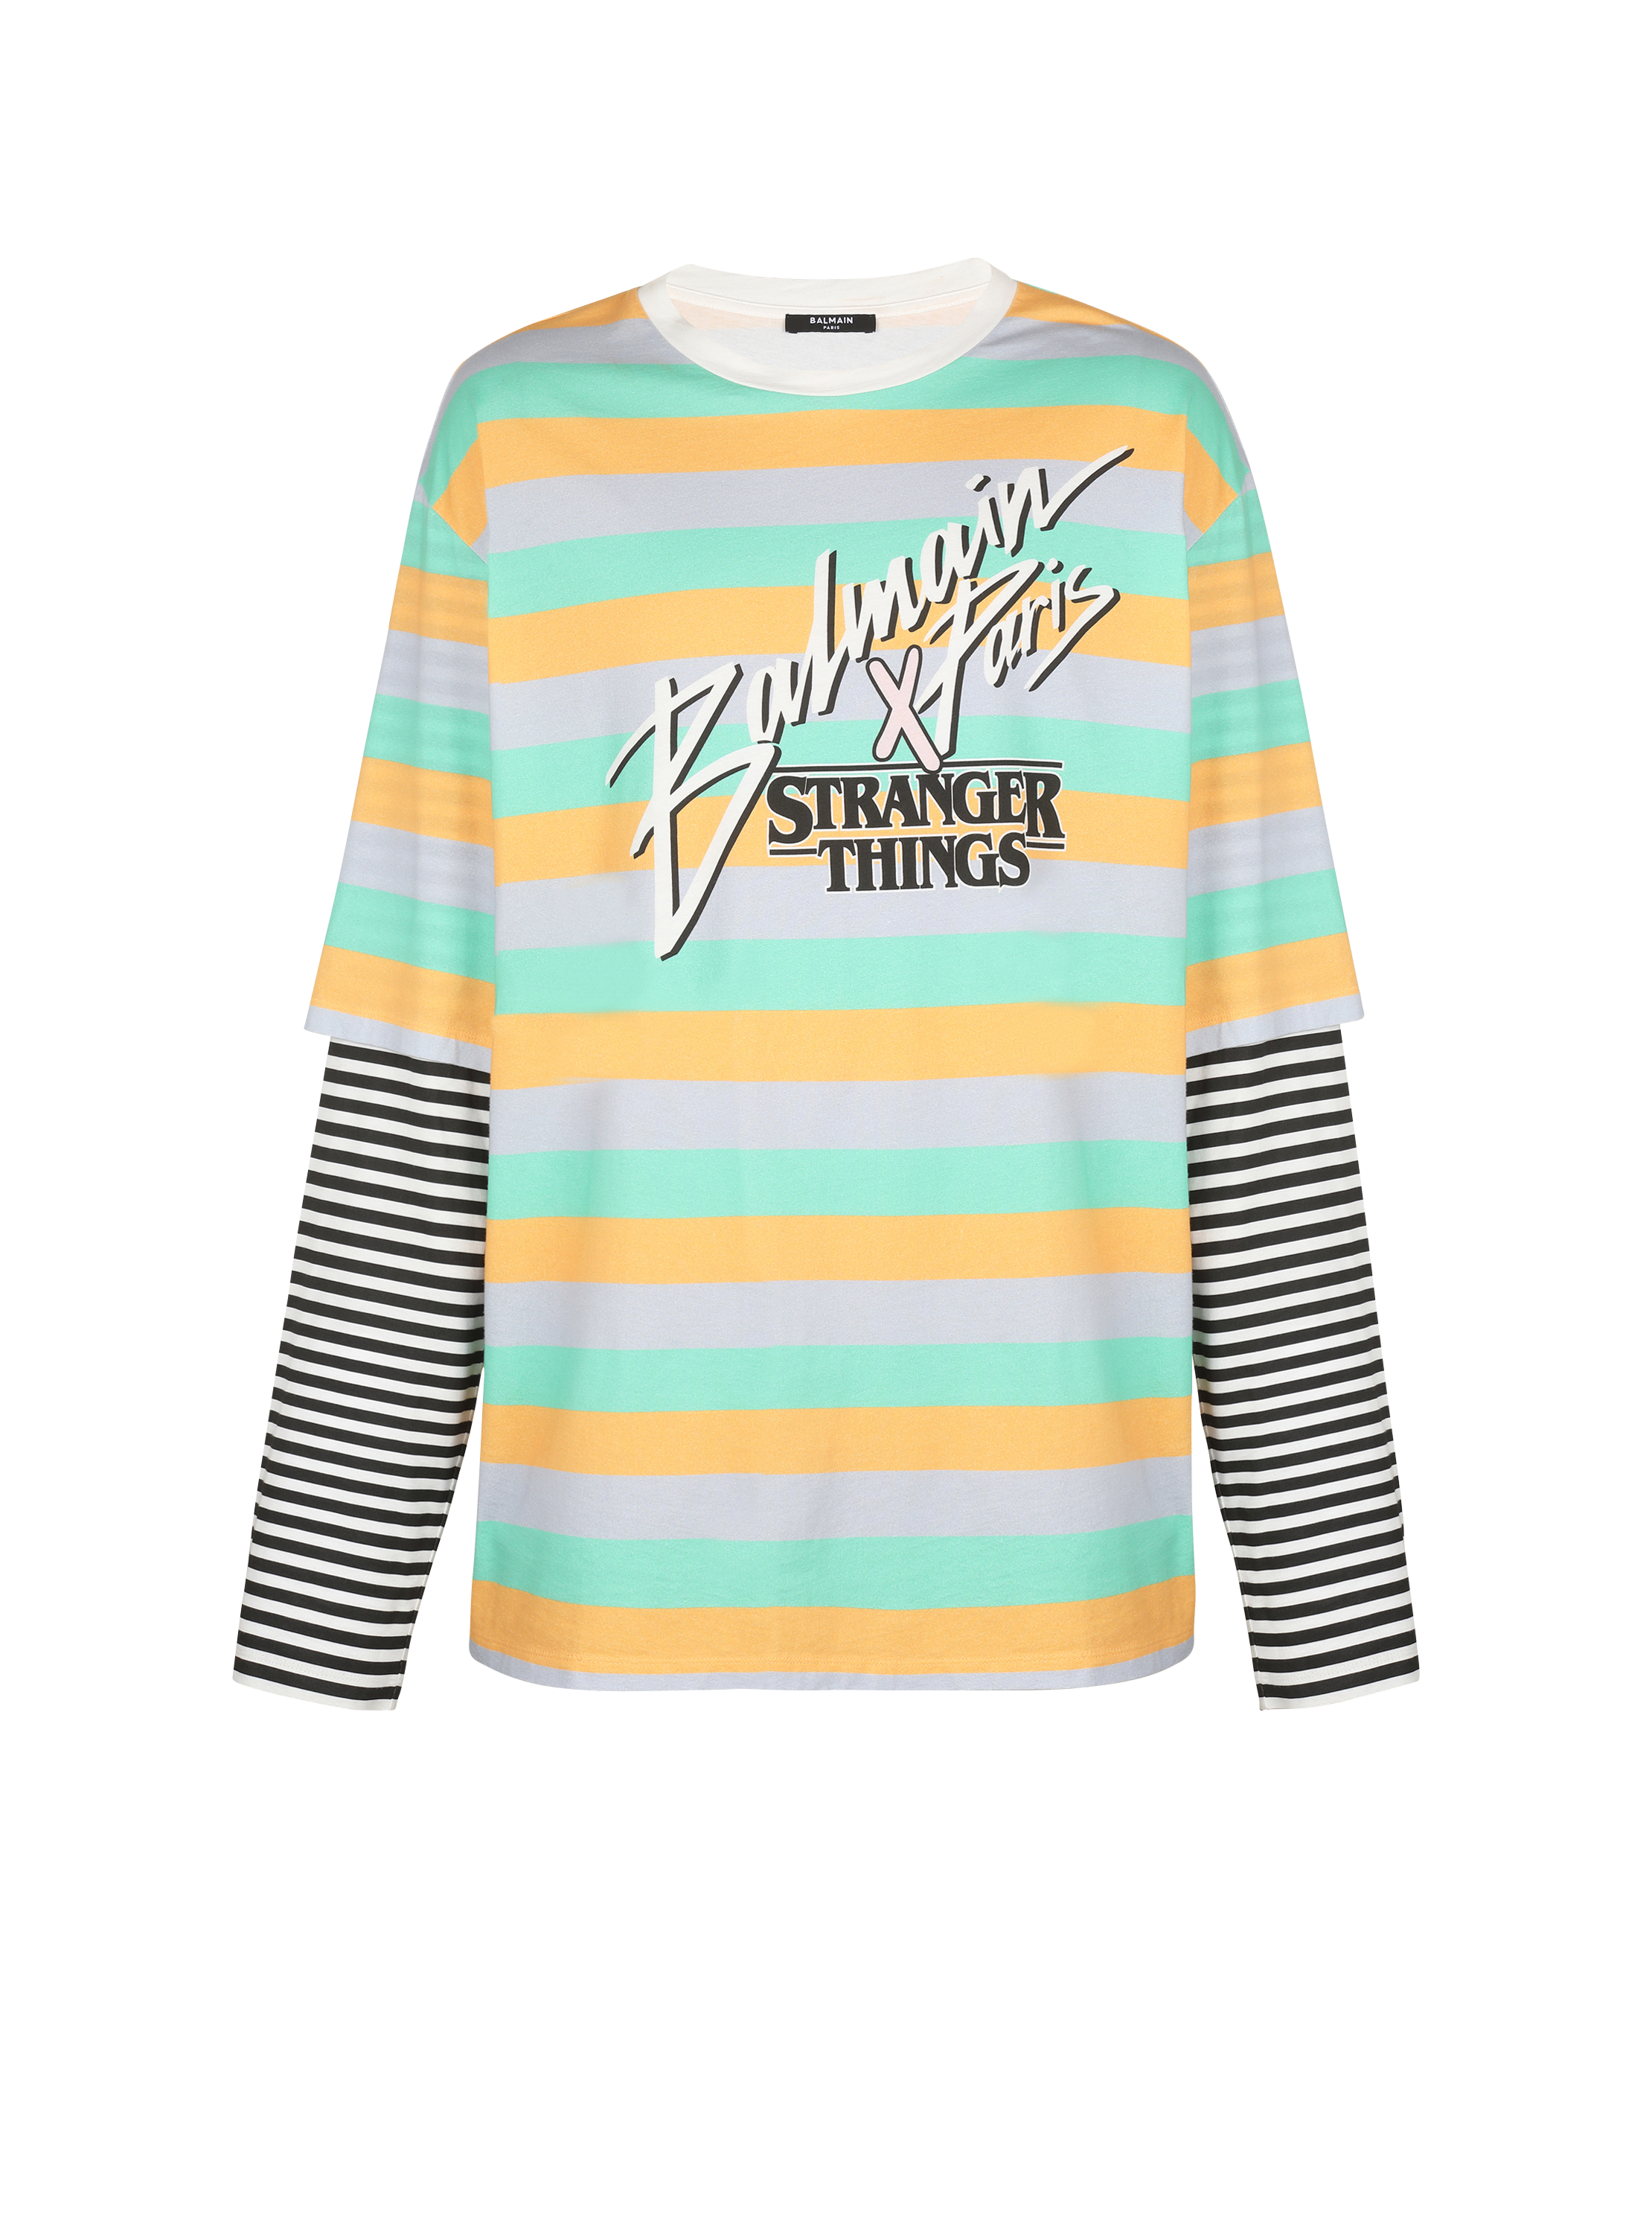 Balmain x Stranger Things - 超大尺寸双层袖T恤